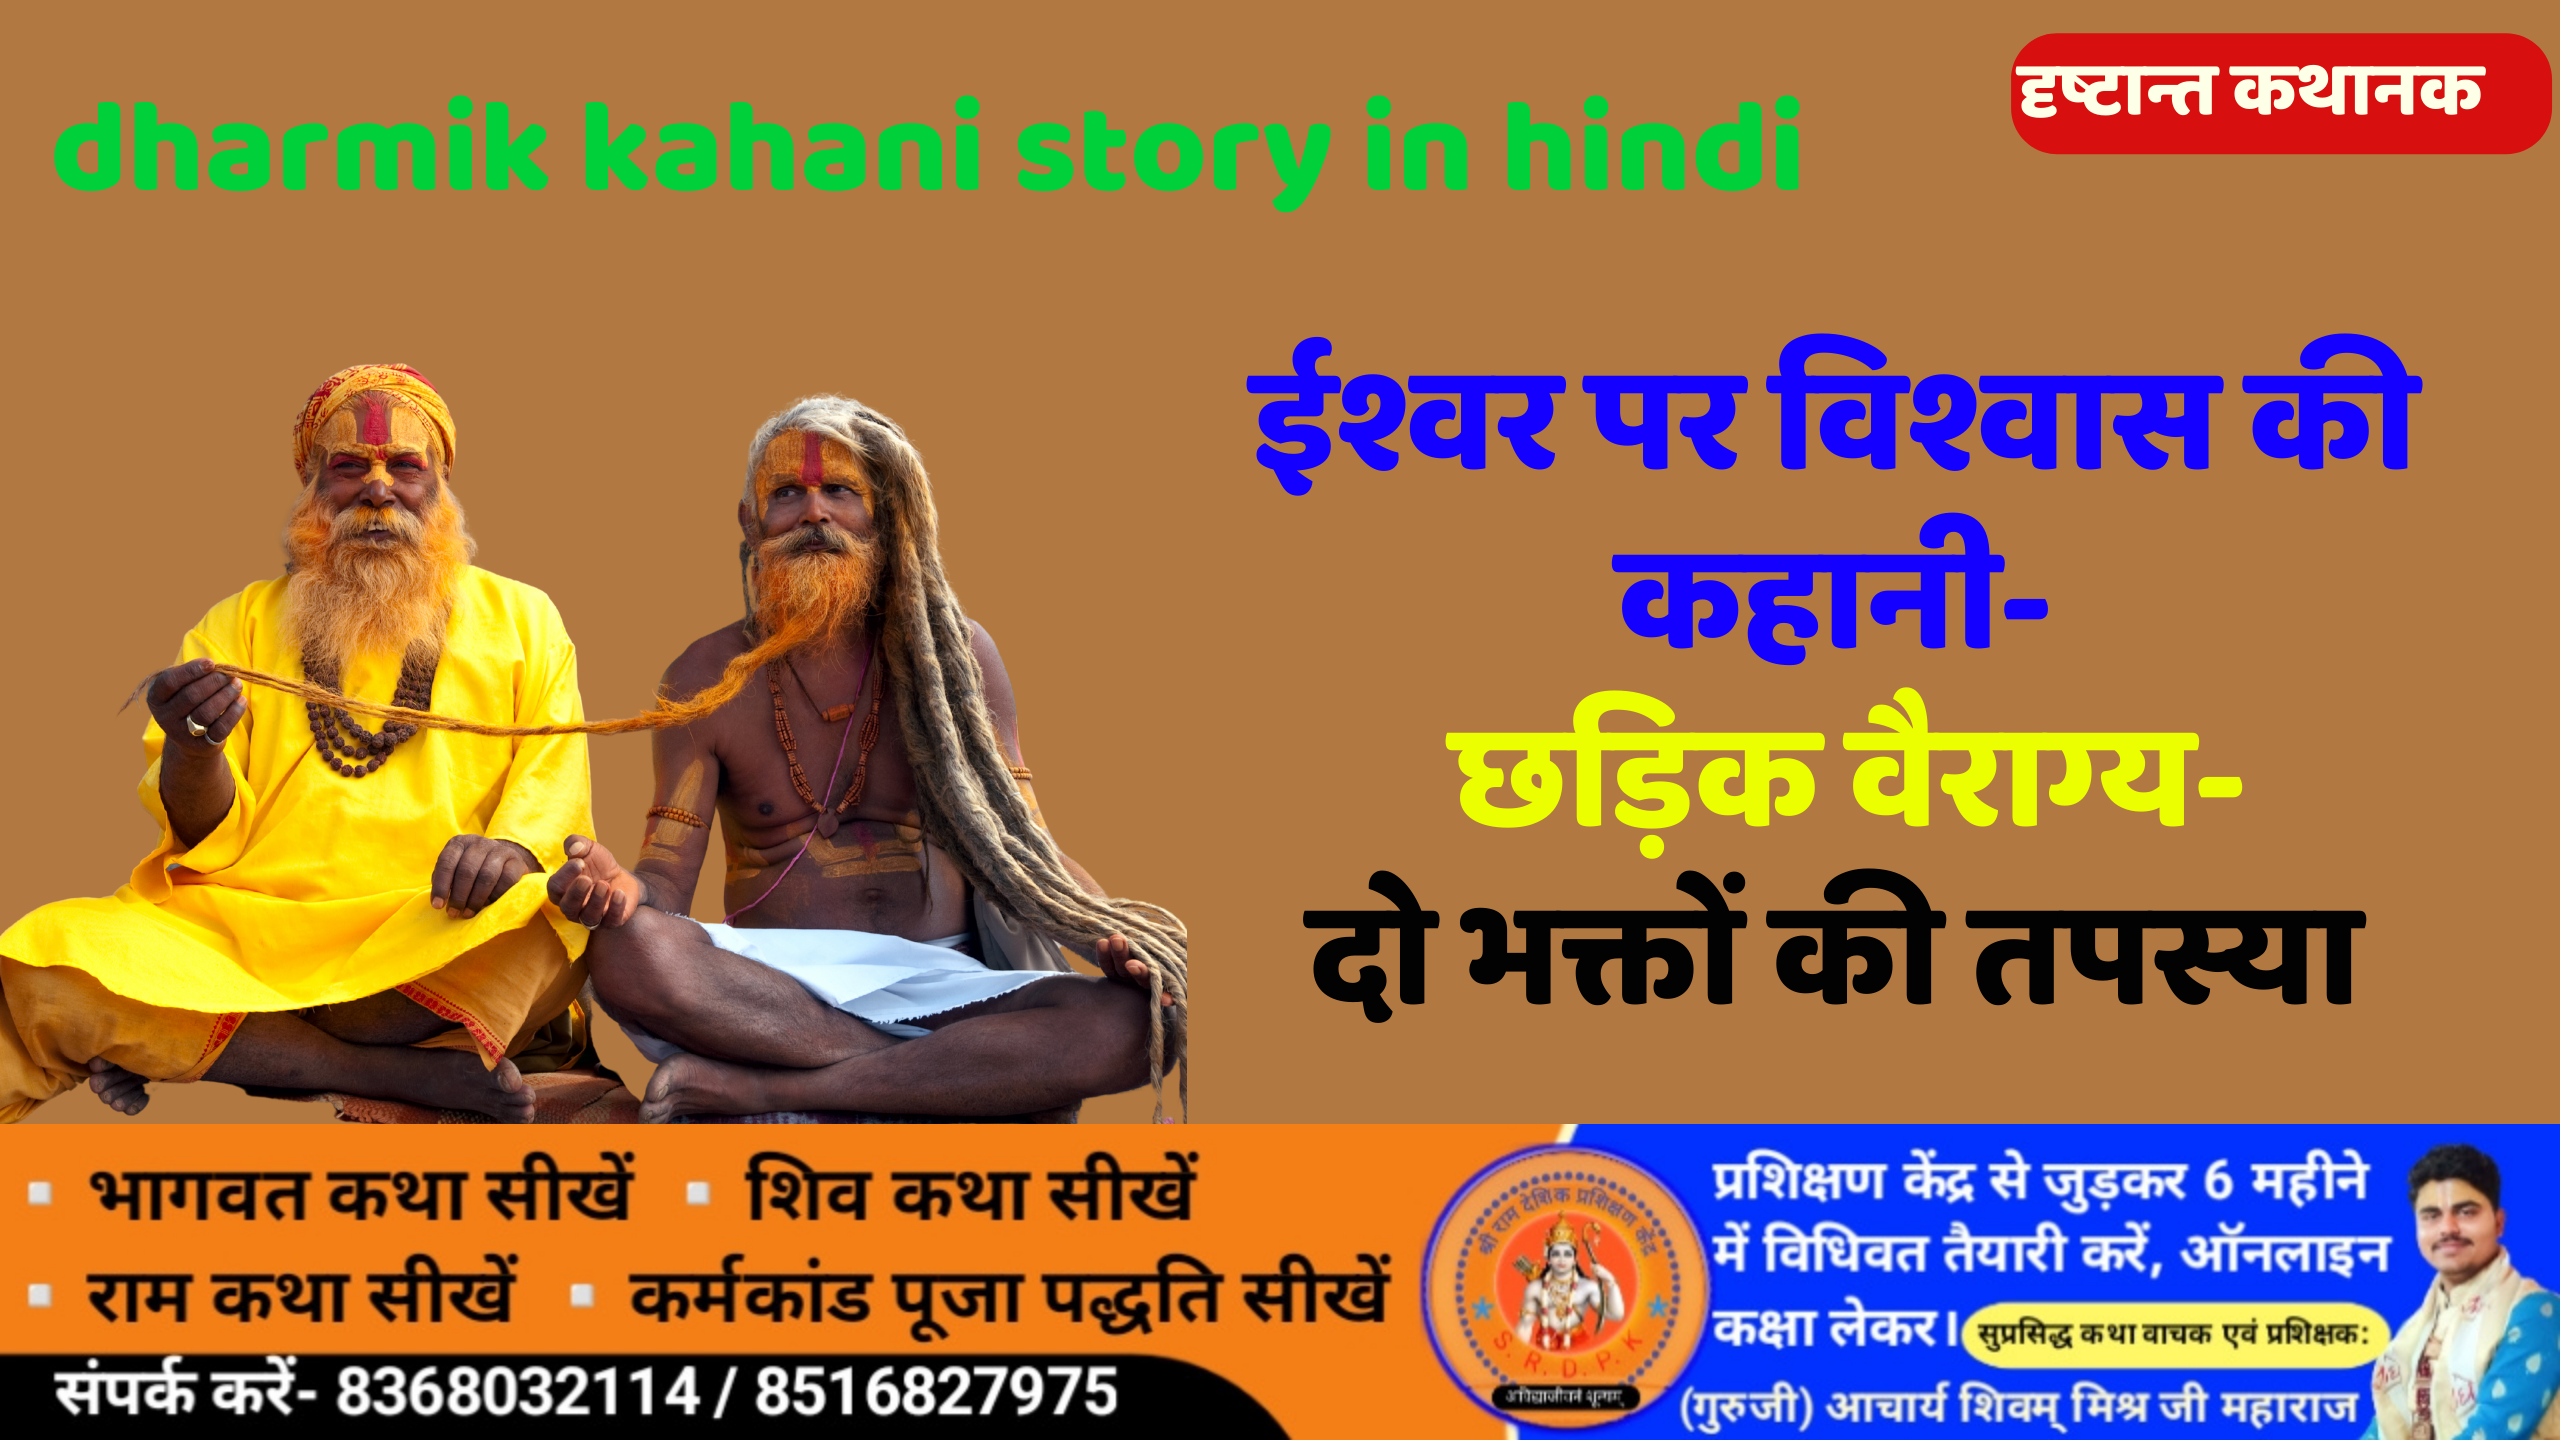 ईश्वर पर विश्वास की कहानी- dharmik kahani story in hindi